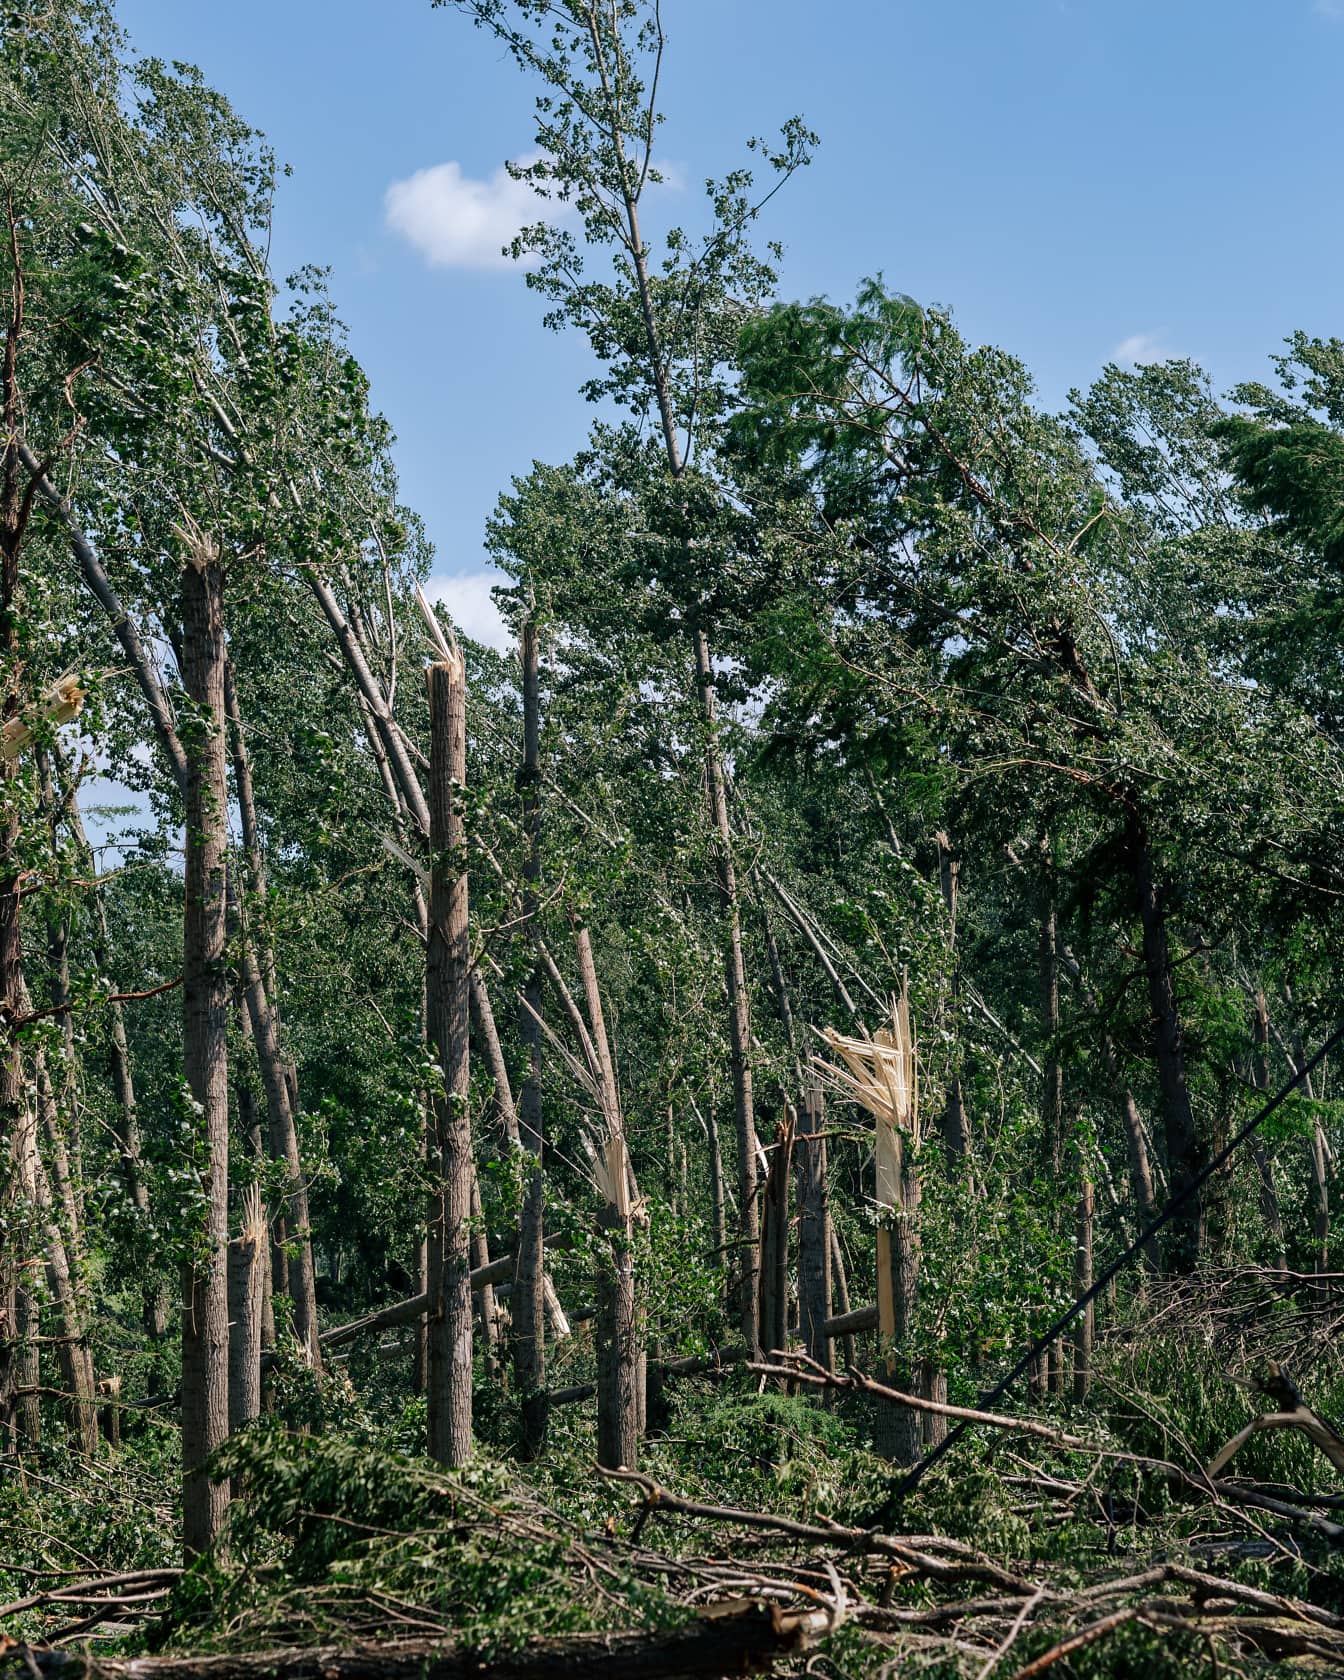 Škody na kmeni stromov v polárnom lese vetrom hurikánu